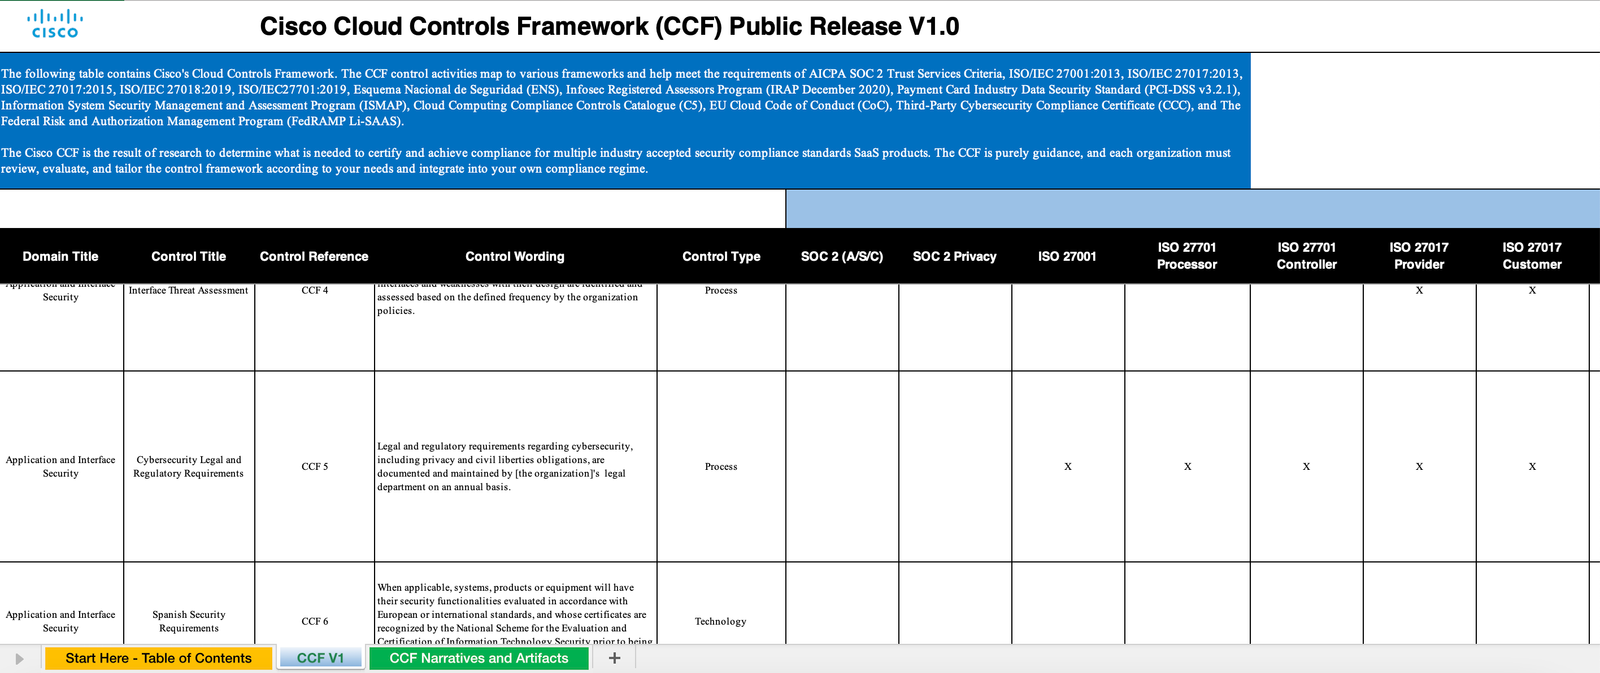 Cisco Cloud Controls Framework v1.0